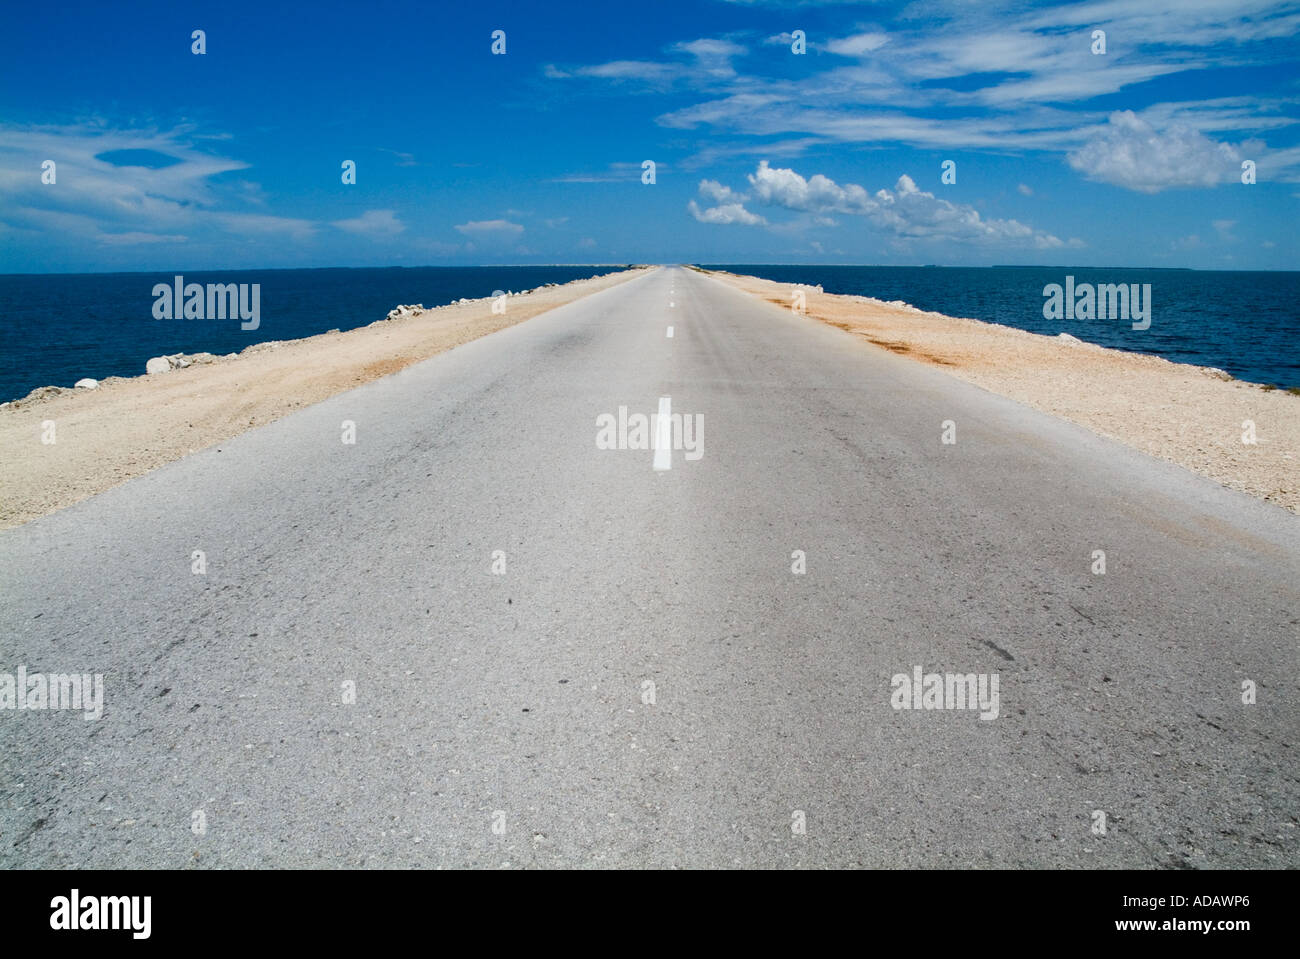 Straight long road going to Cayo Santa Maria, Cuba Stock Photo